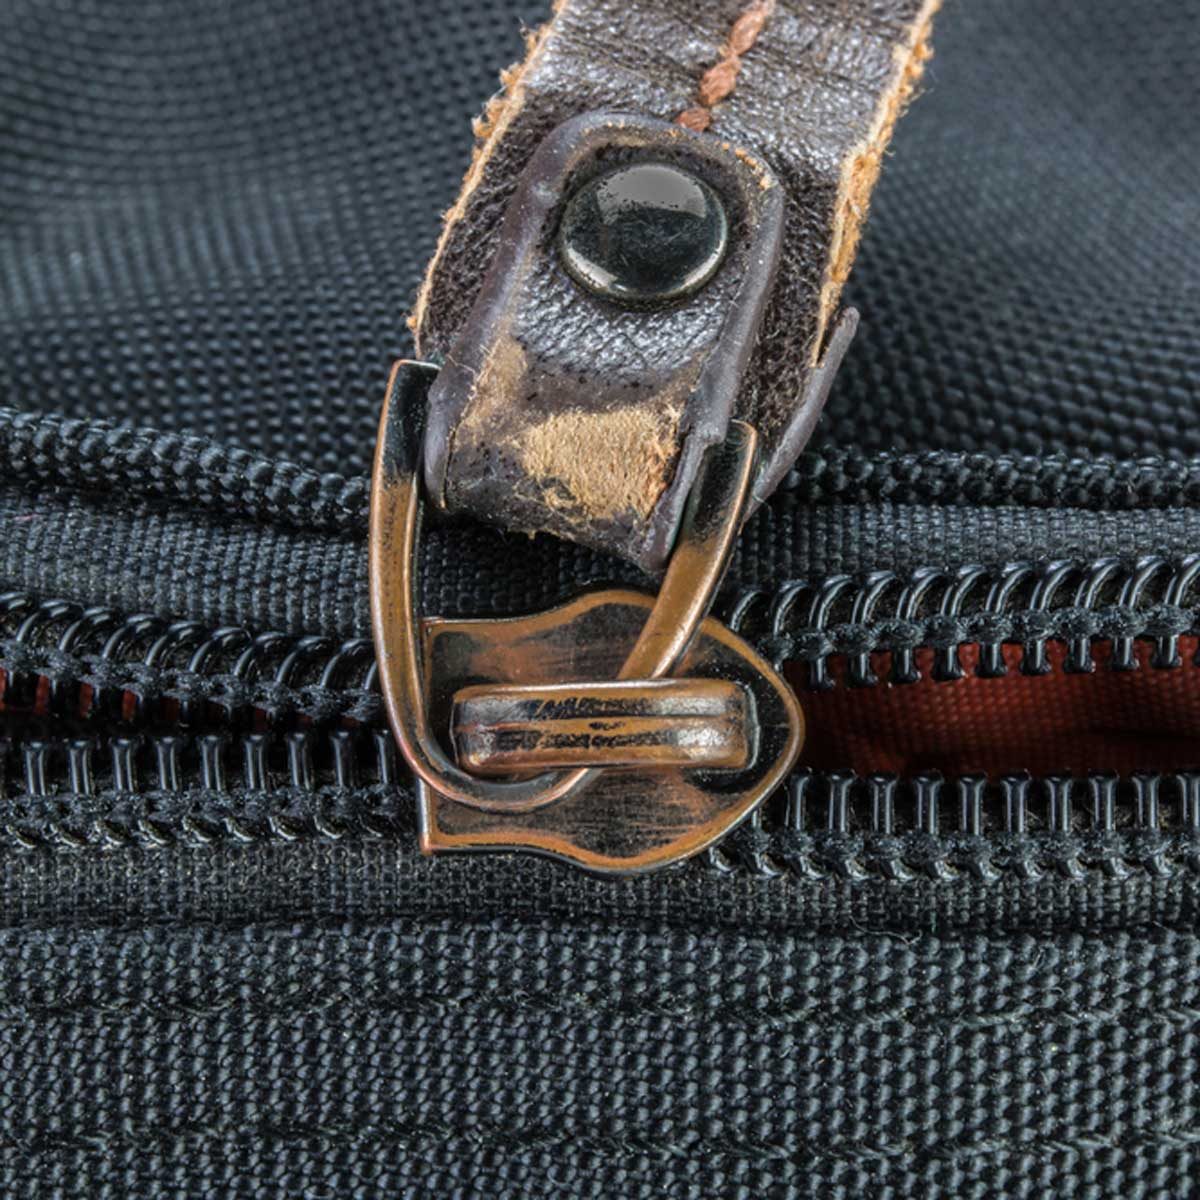 How to Repair Zipper